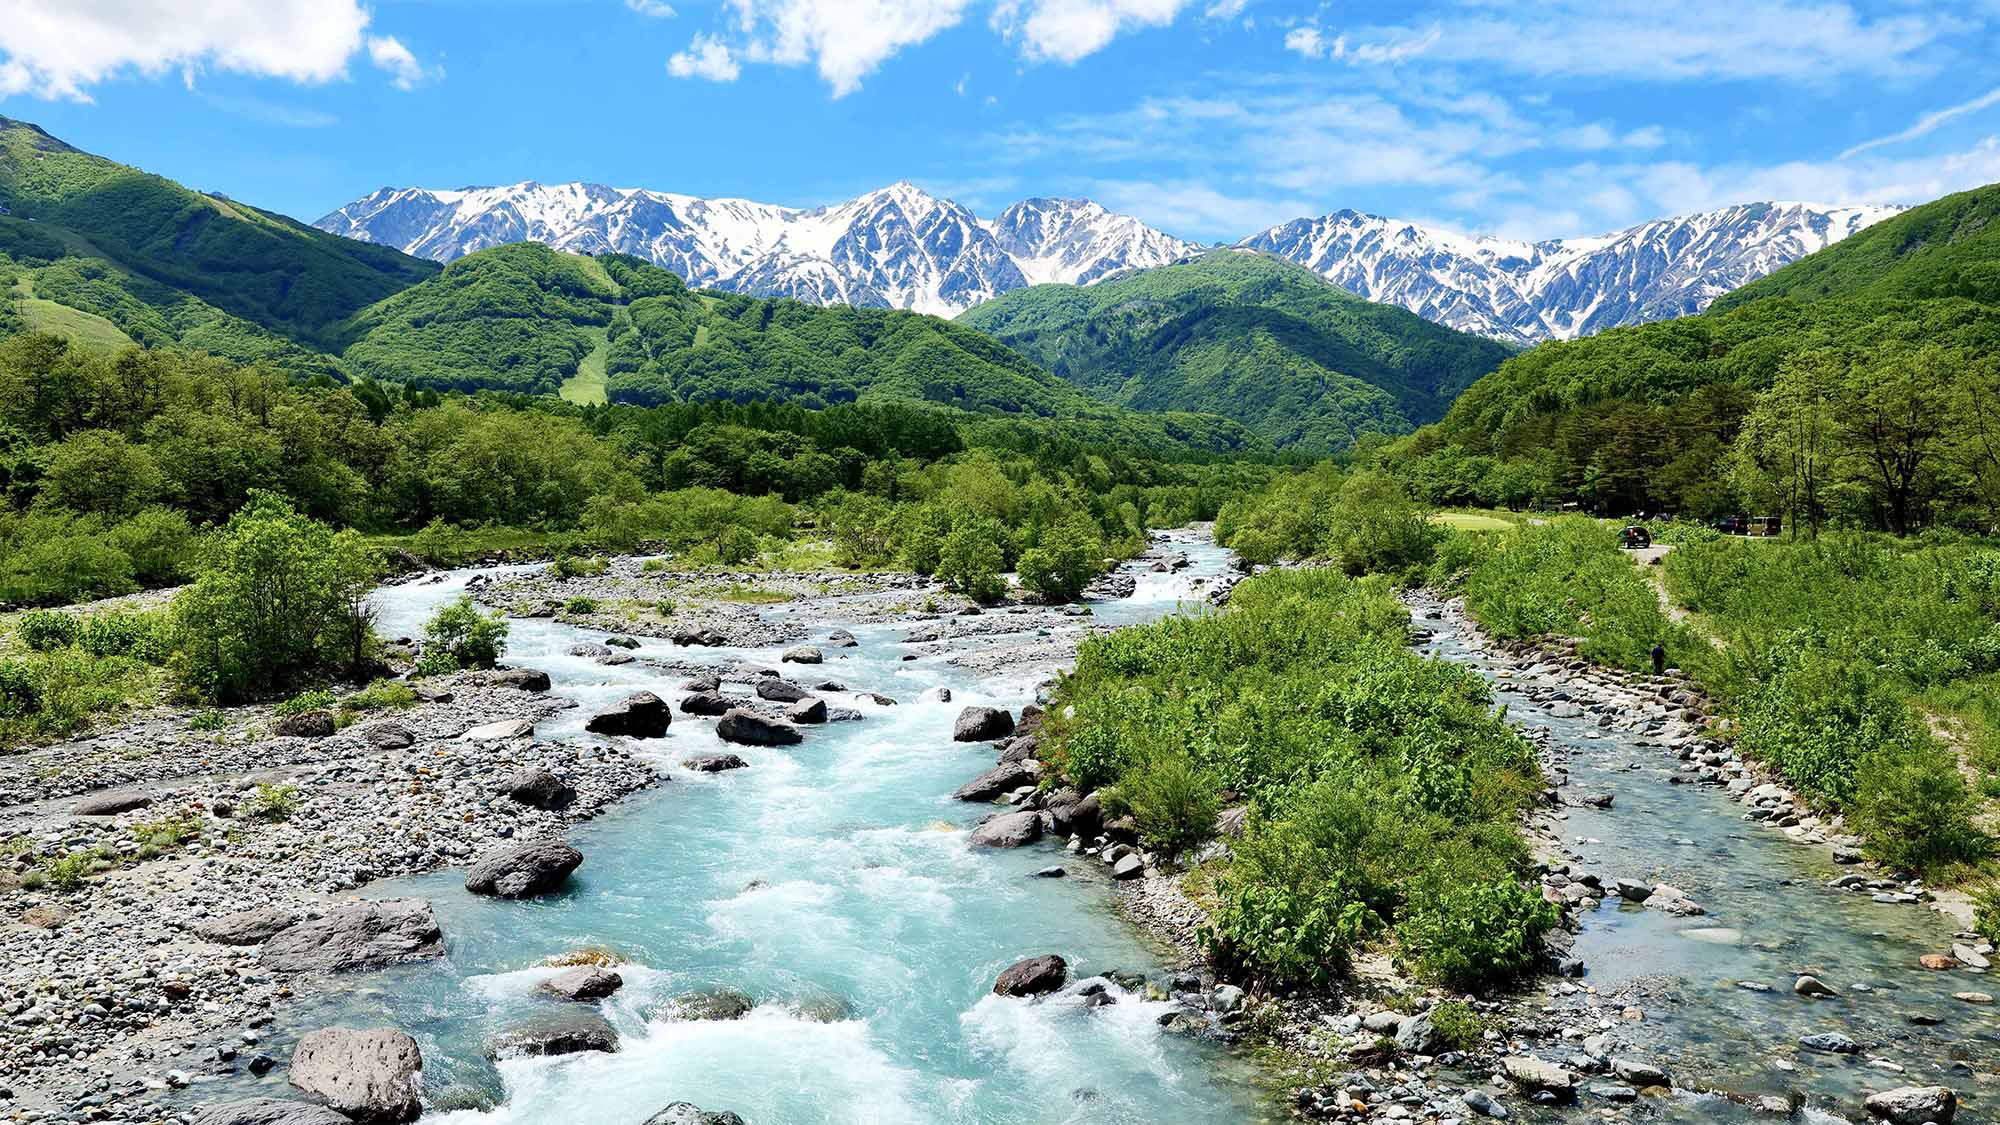 ・【松川 大雪渓】信州の自然がもつ豊かな水源を五感で感じていただけます。